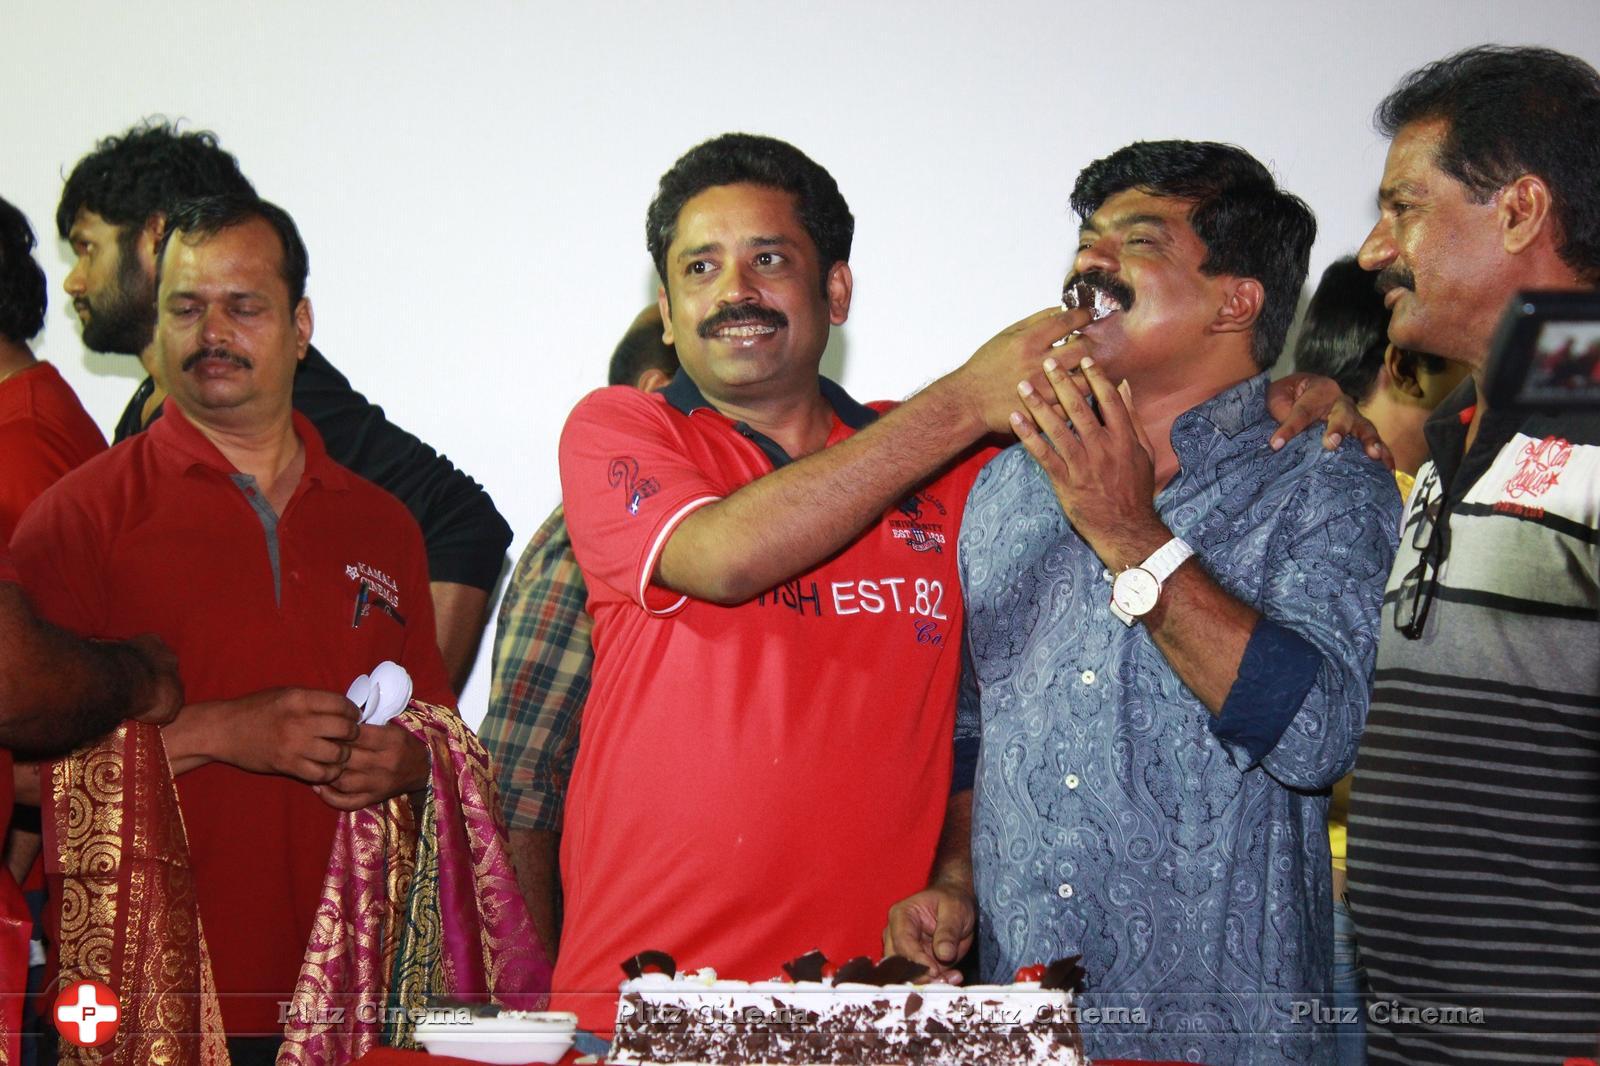 Dharmadurai Movie Team Success Celebration Photos | Picture 1392200